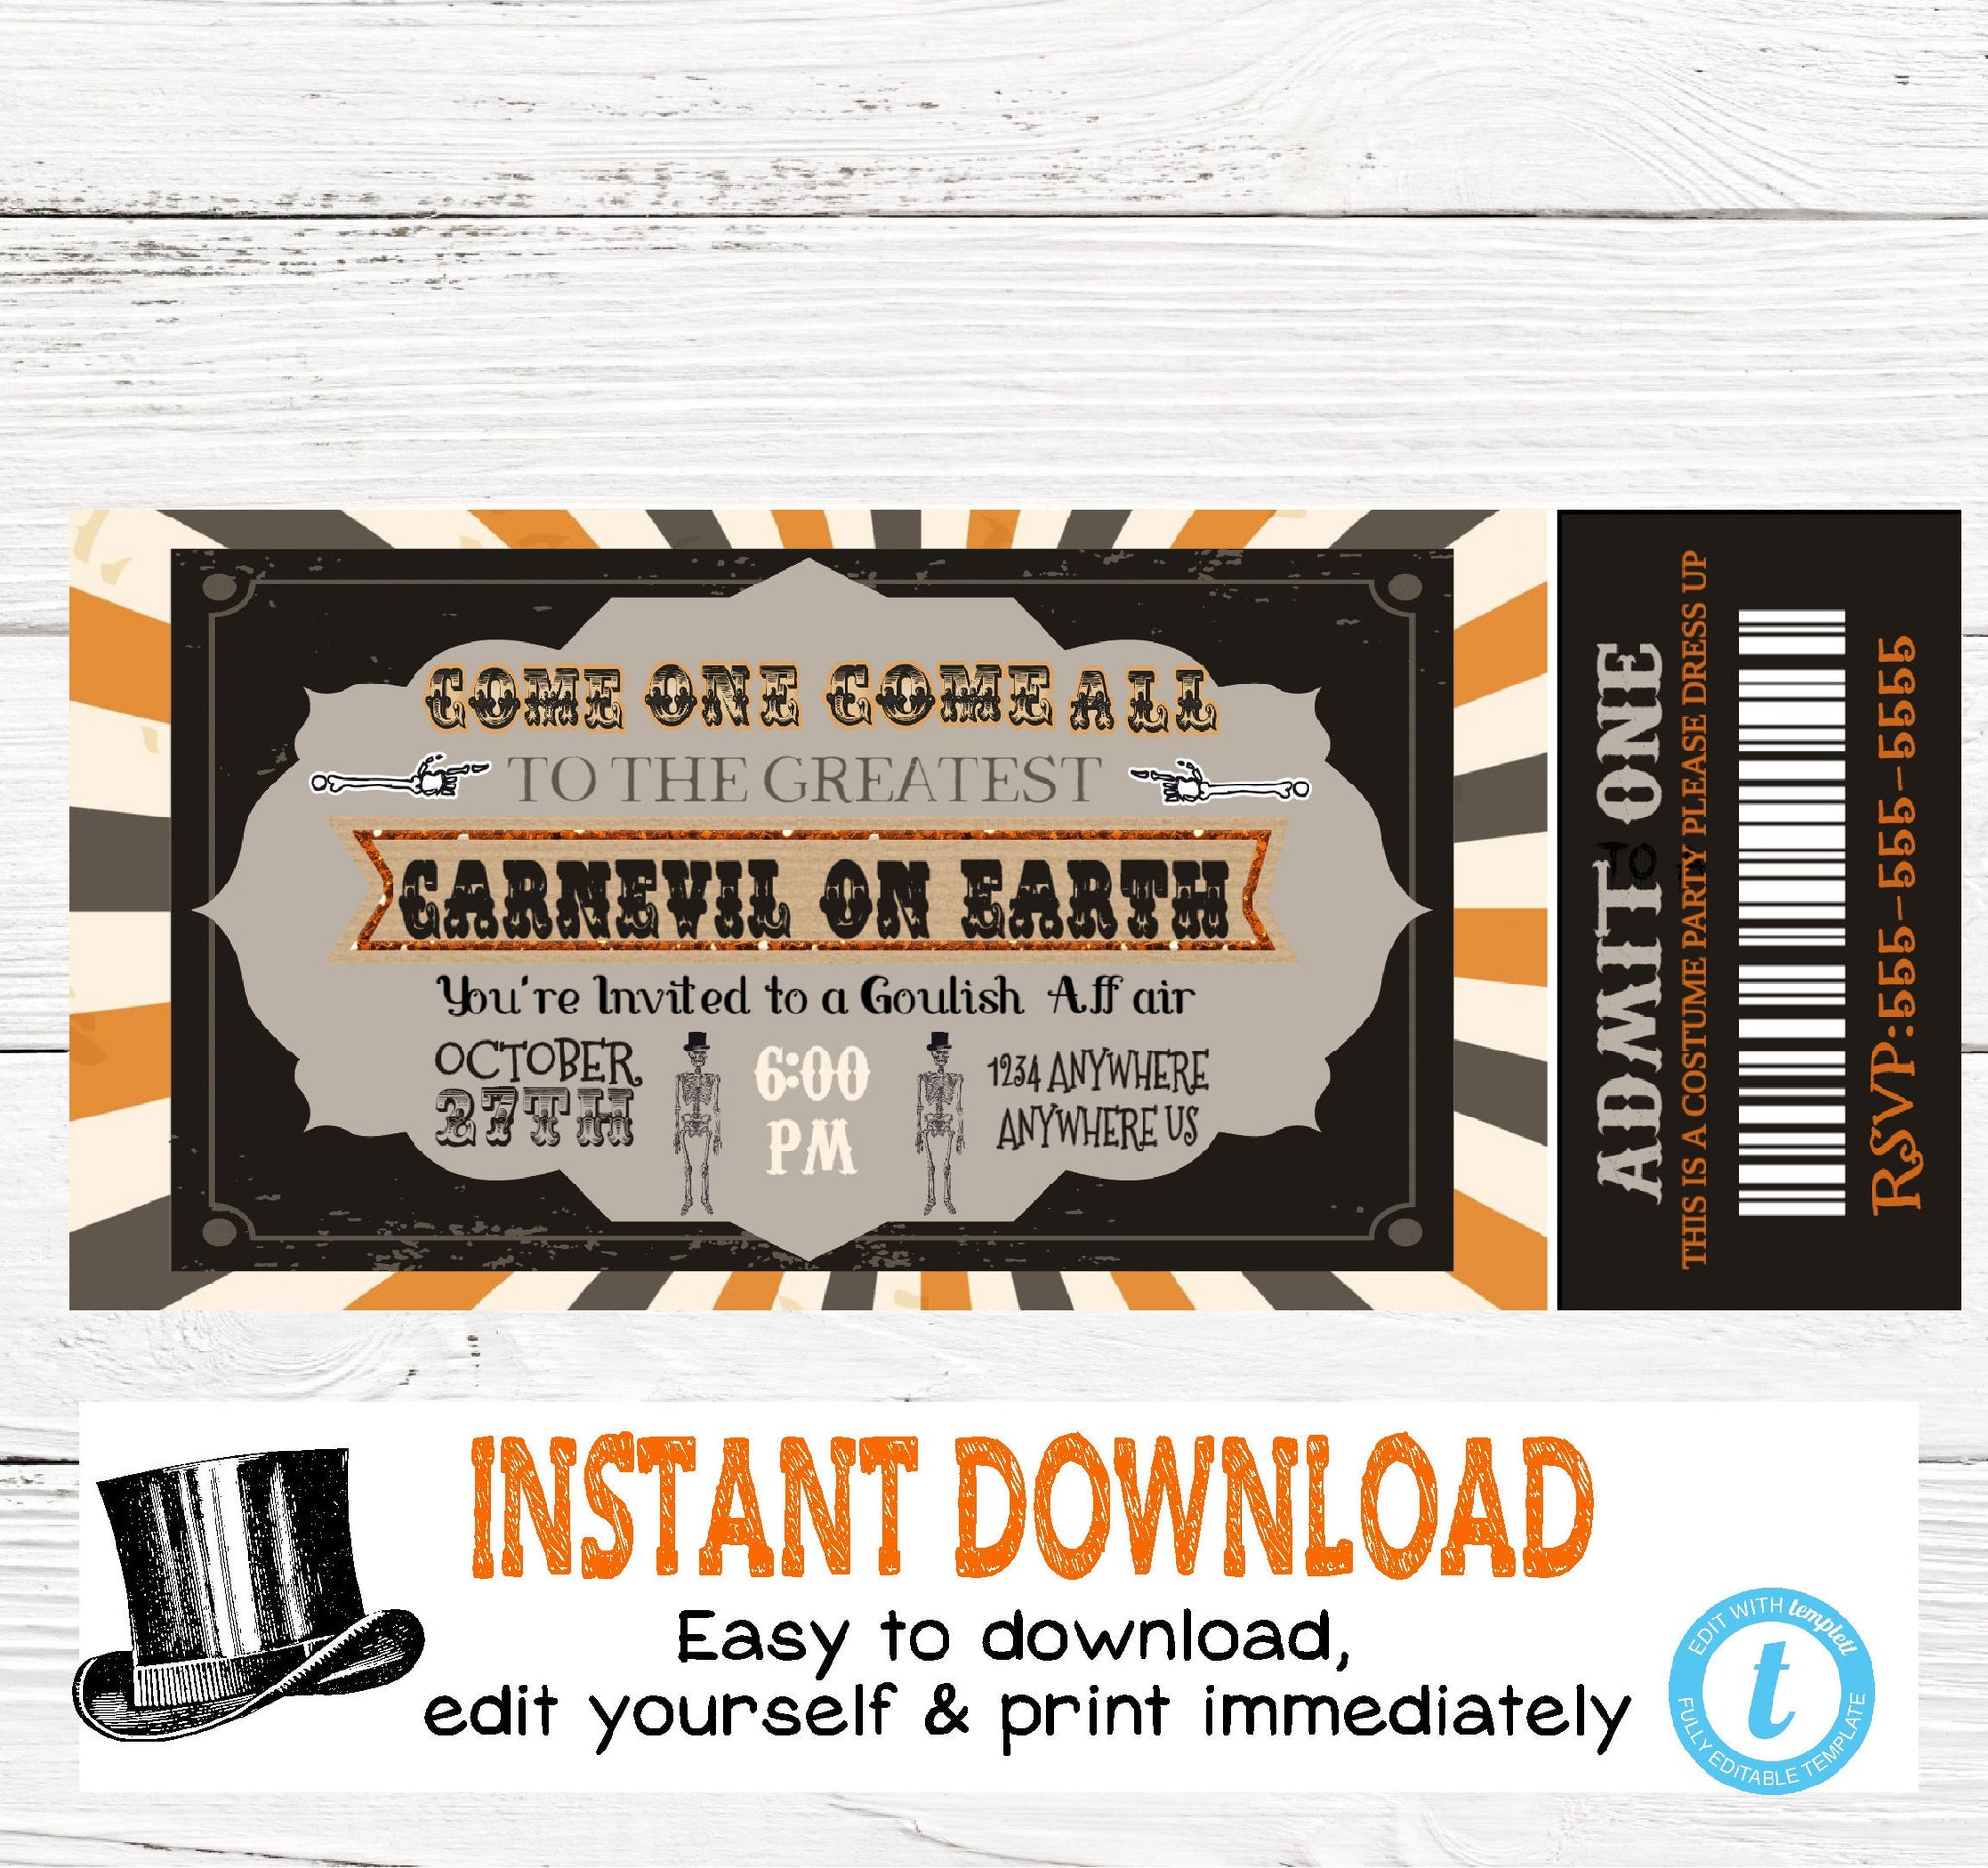 carnival ticket invitations